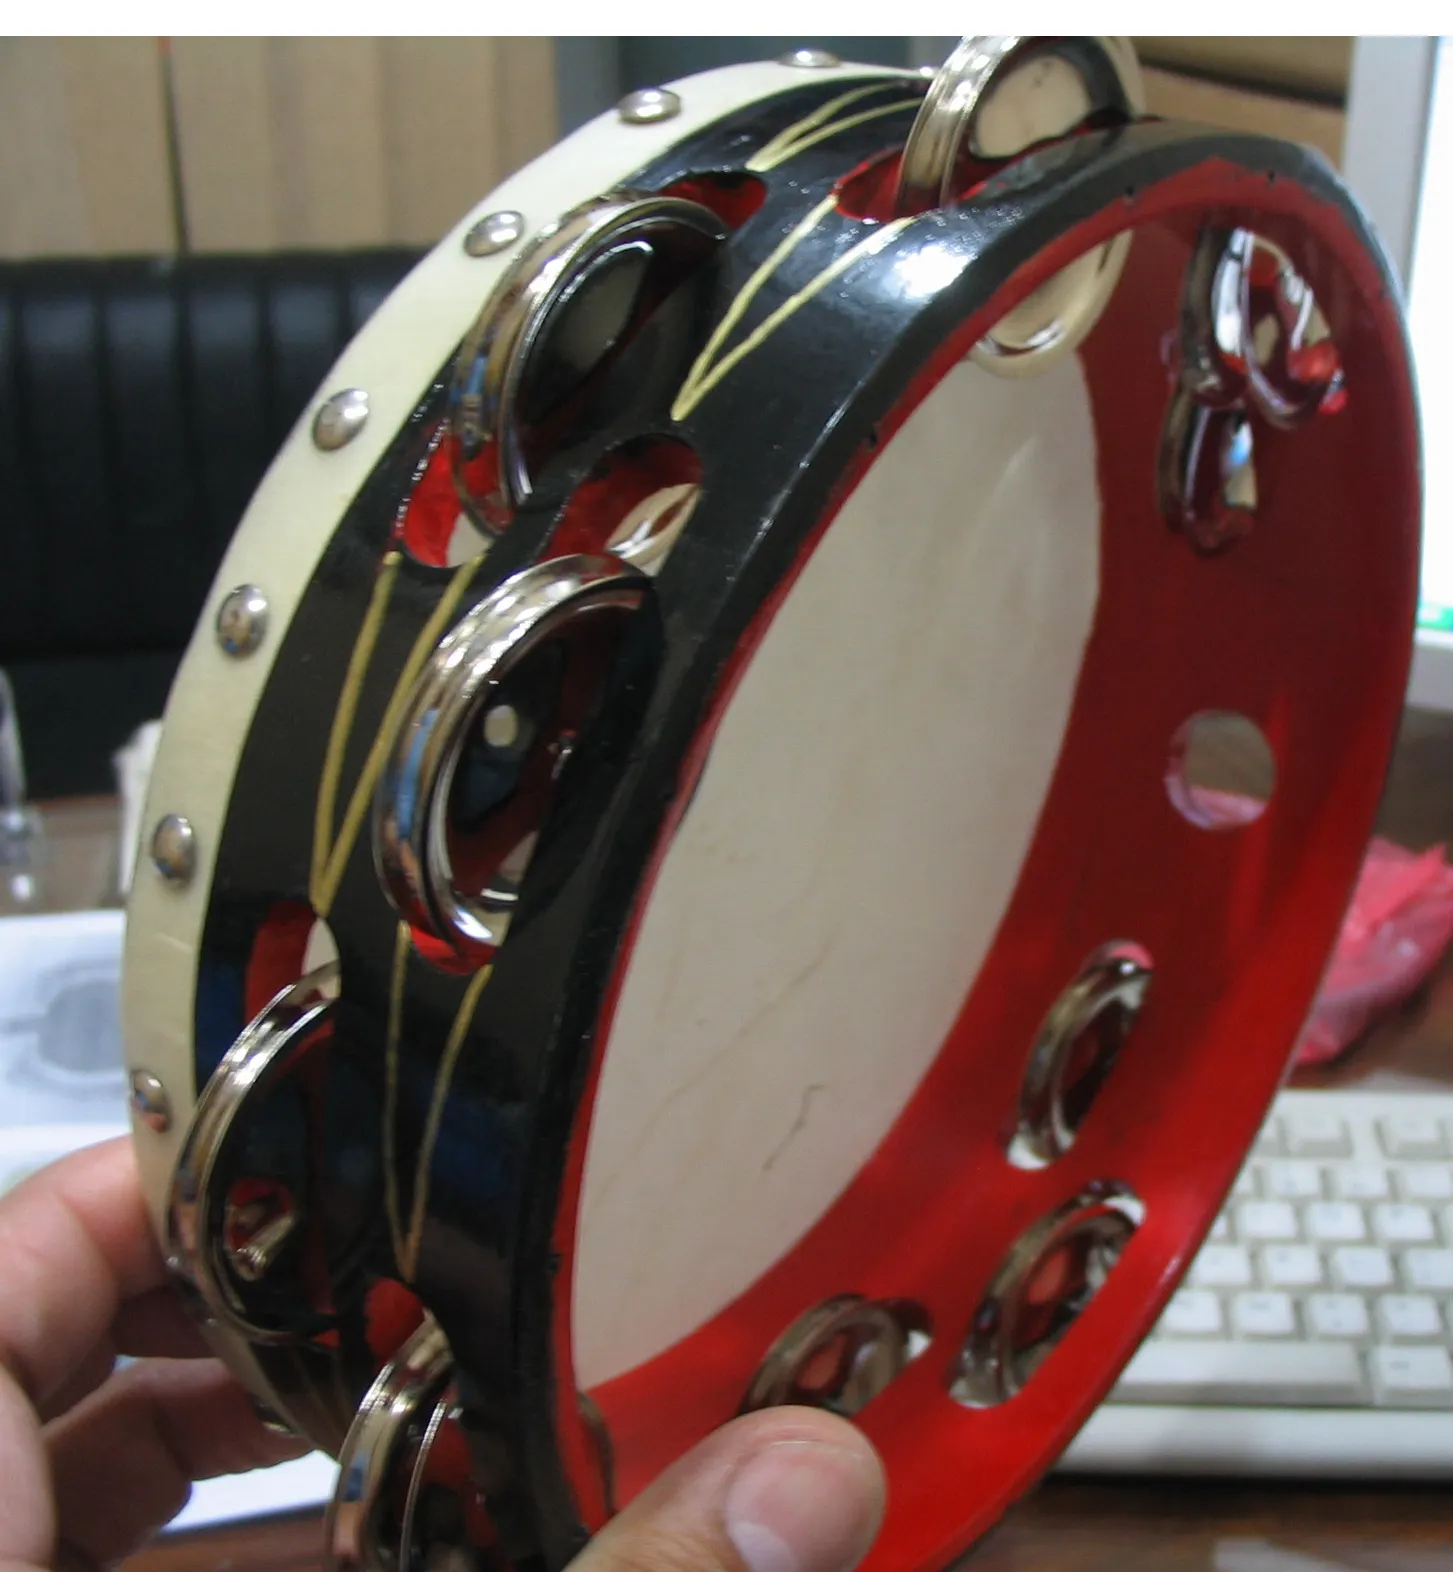 Tambourine, small frame drum